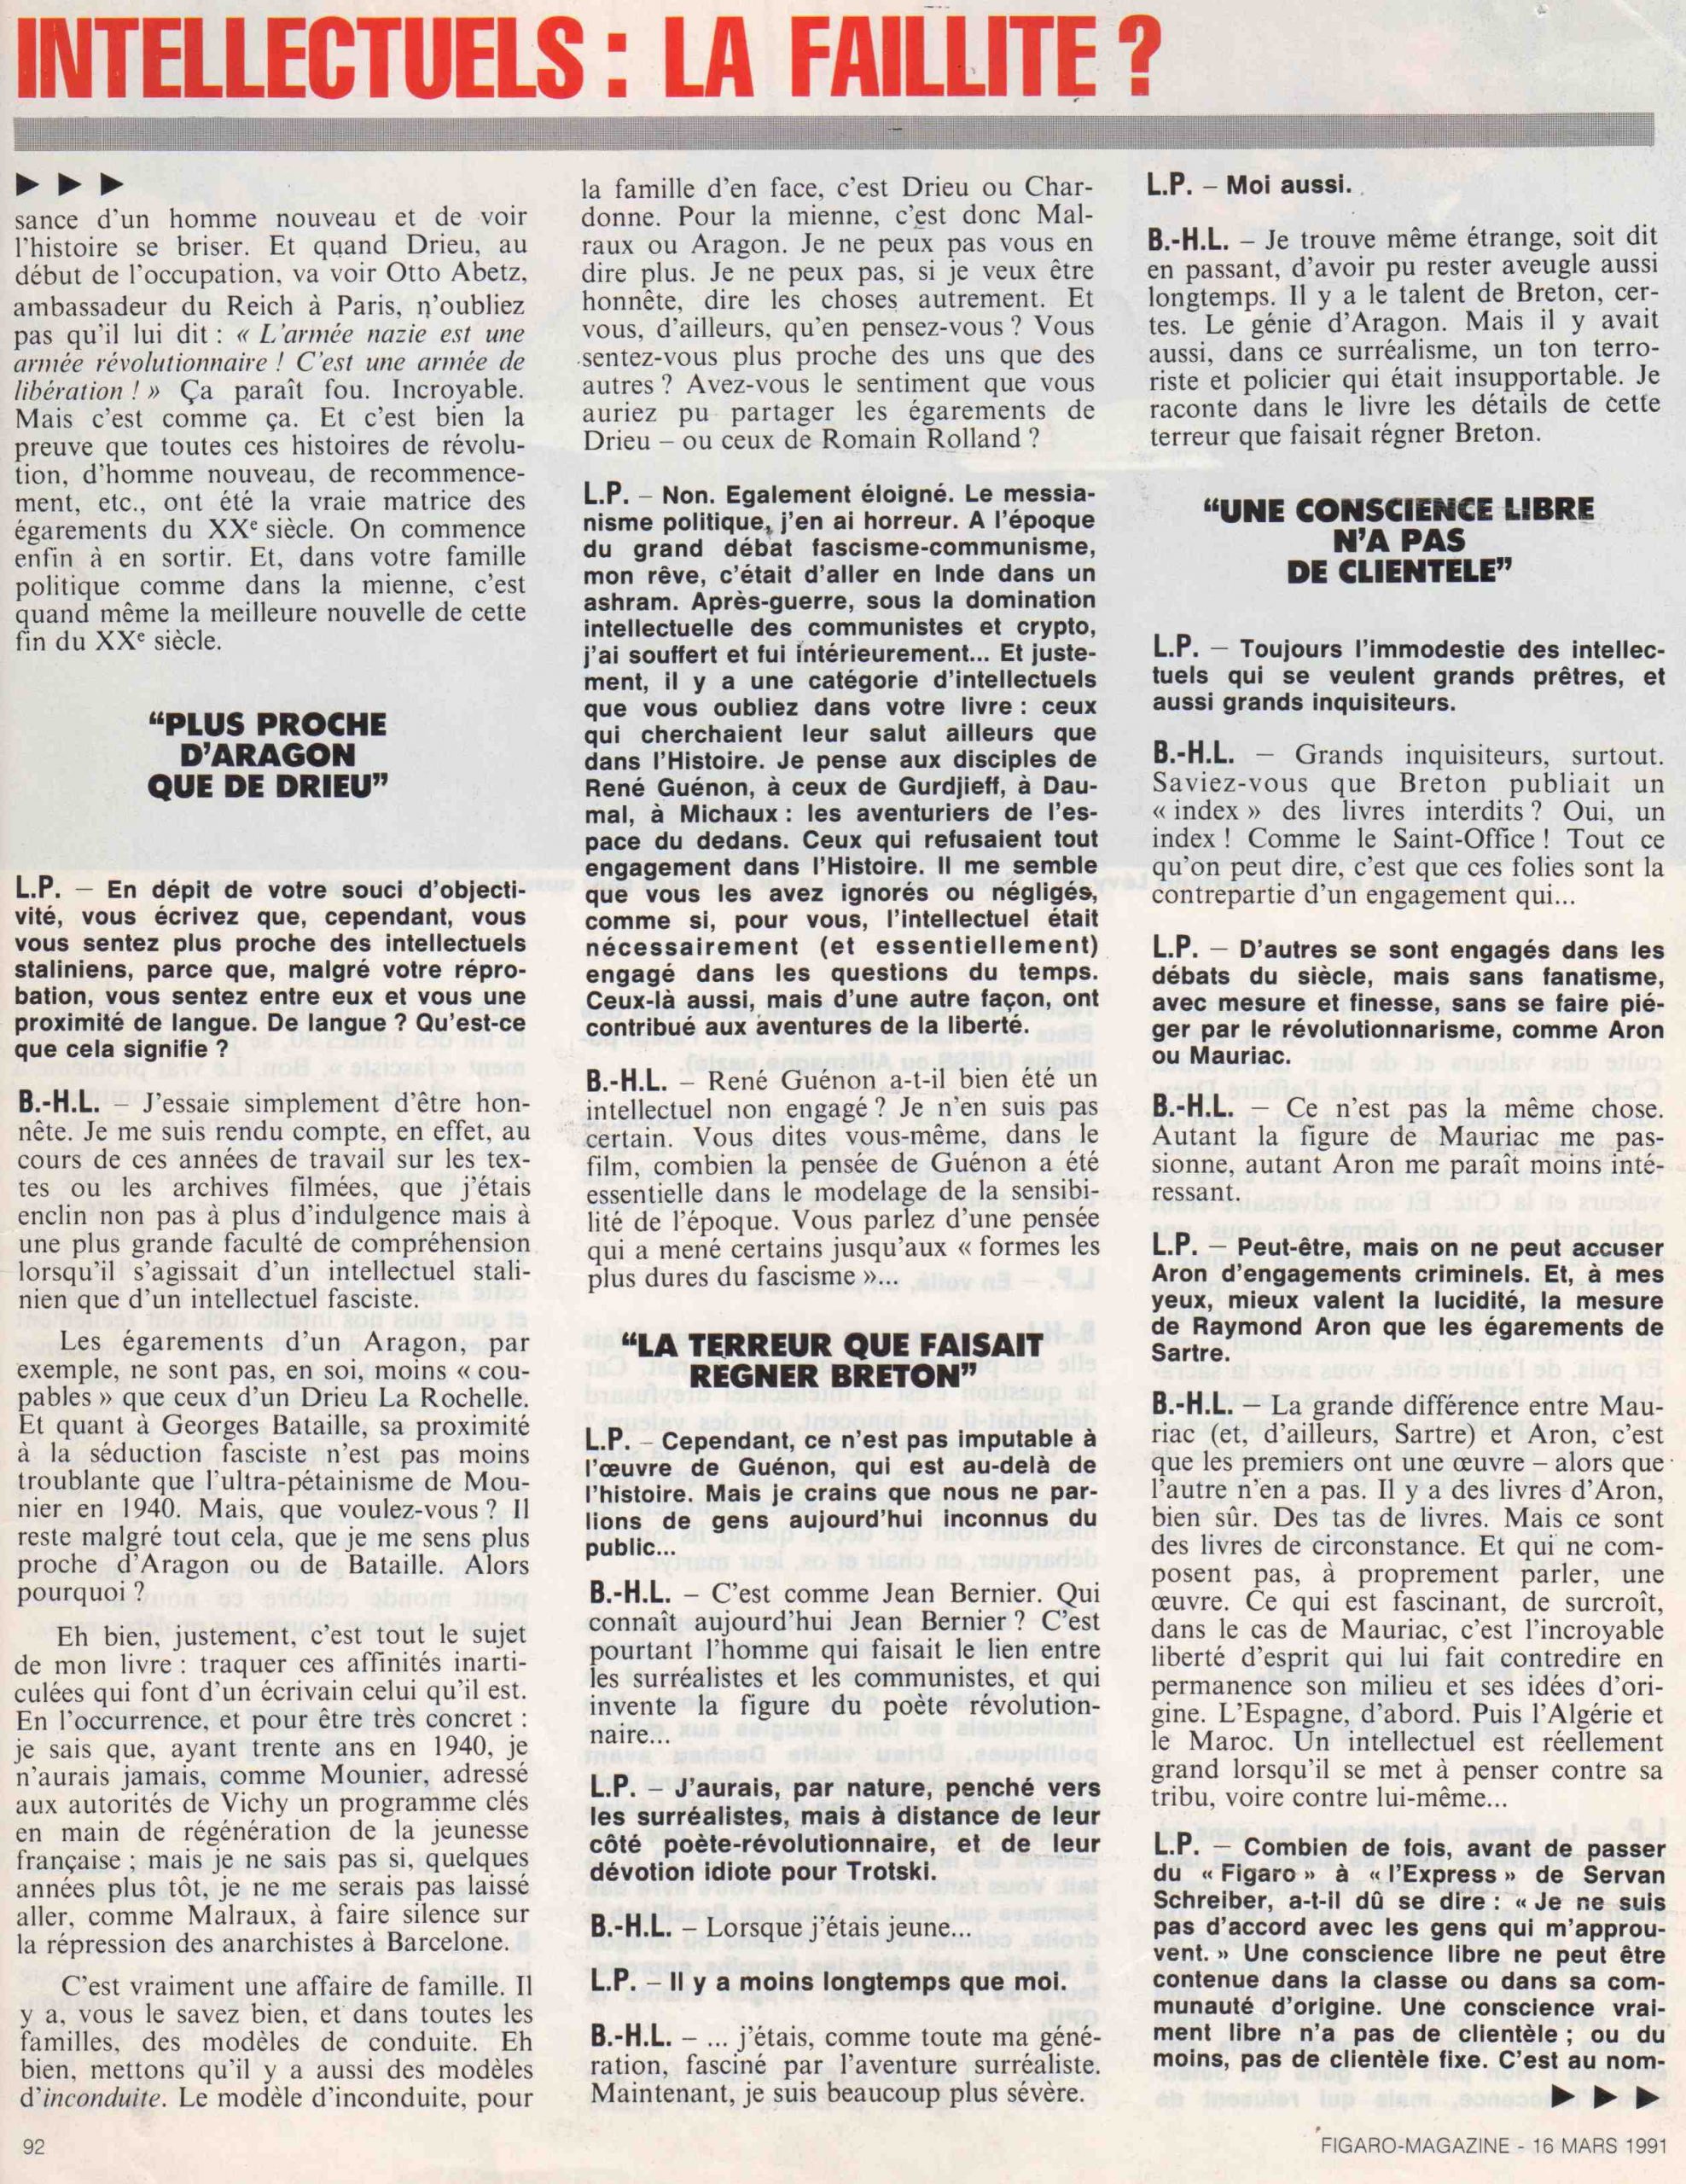 Entretien entre Louis Pauwels et Bernard-Henri Lévy dans le « Figaro Magazine » le 16 mars 1991.